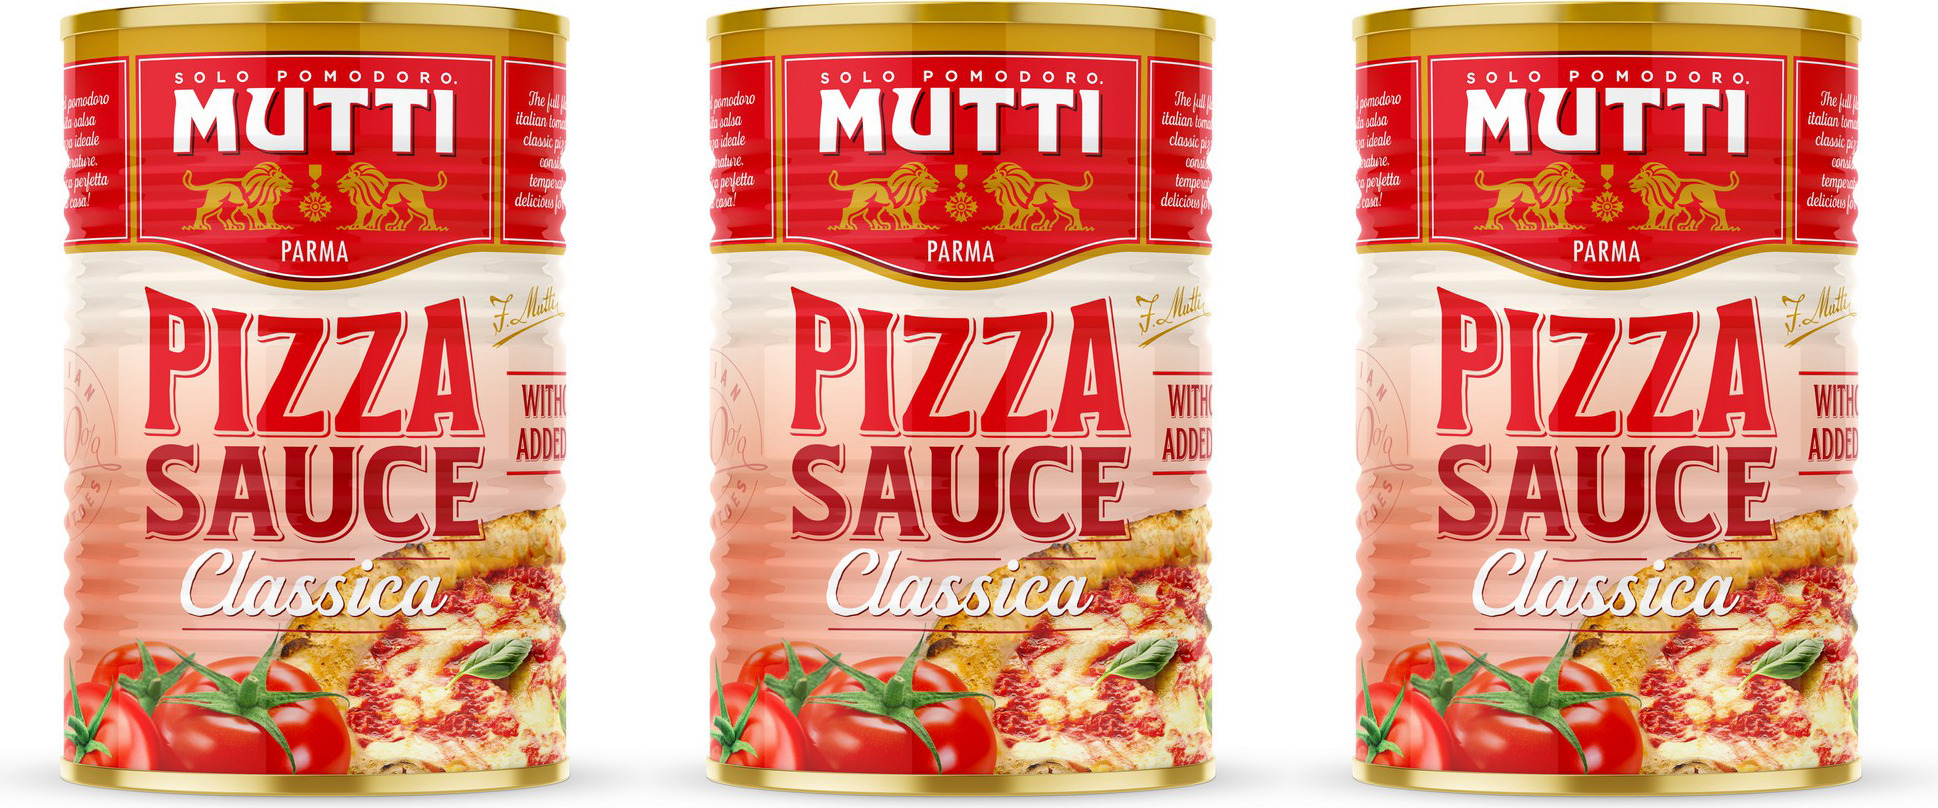 mutti томатный соус для пиццы классический фото 57